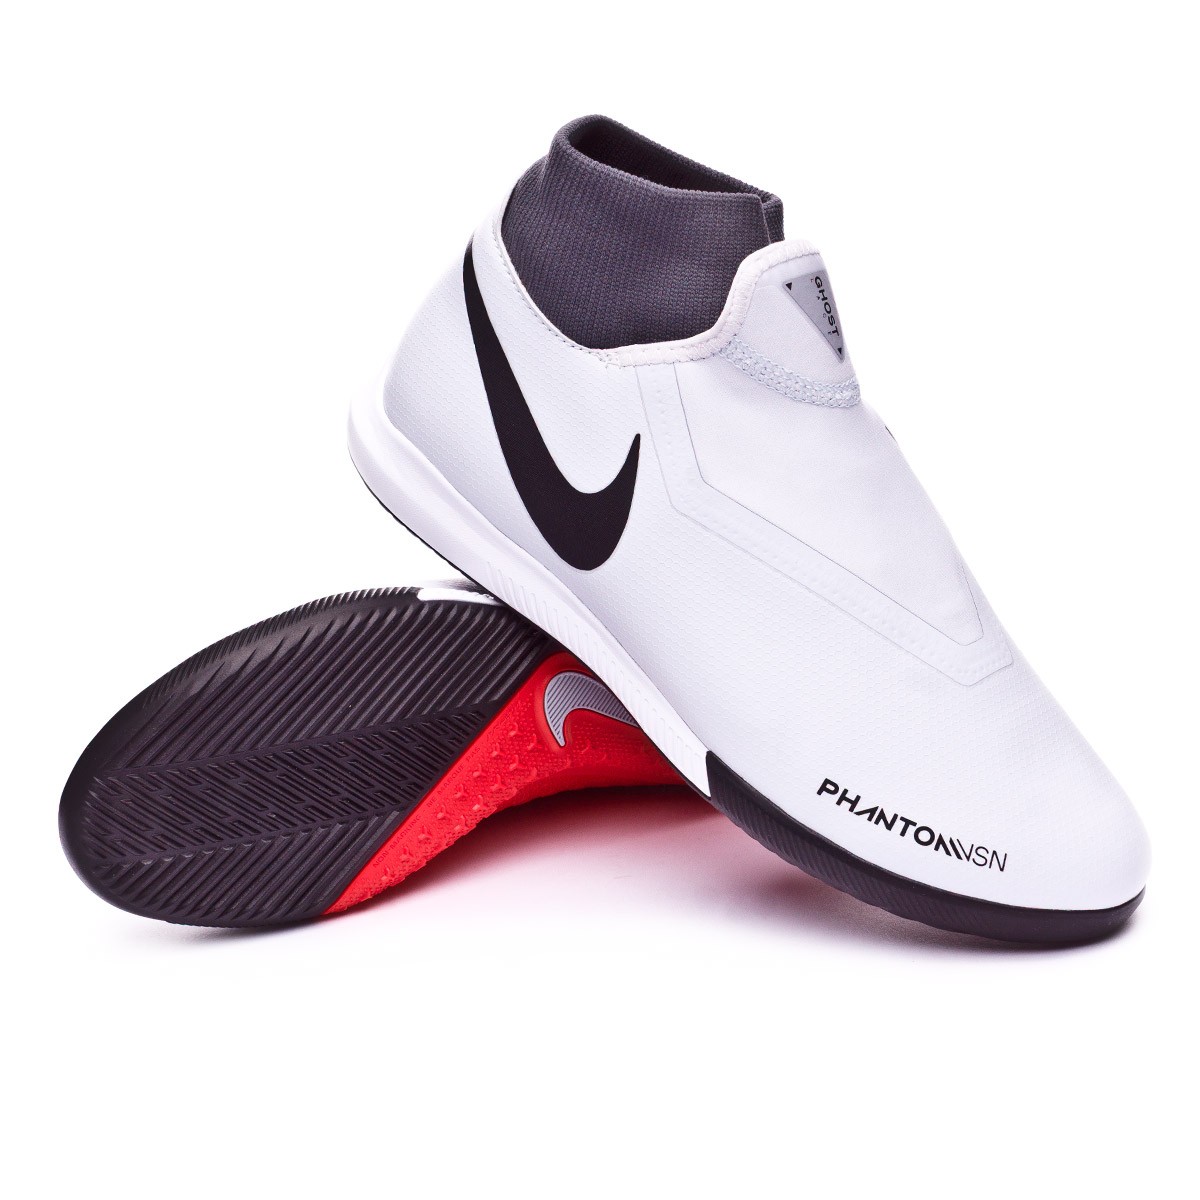 tenis nike phantom vision - Tienda Online de Zapatos, Ropa y Complementos  de marca